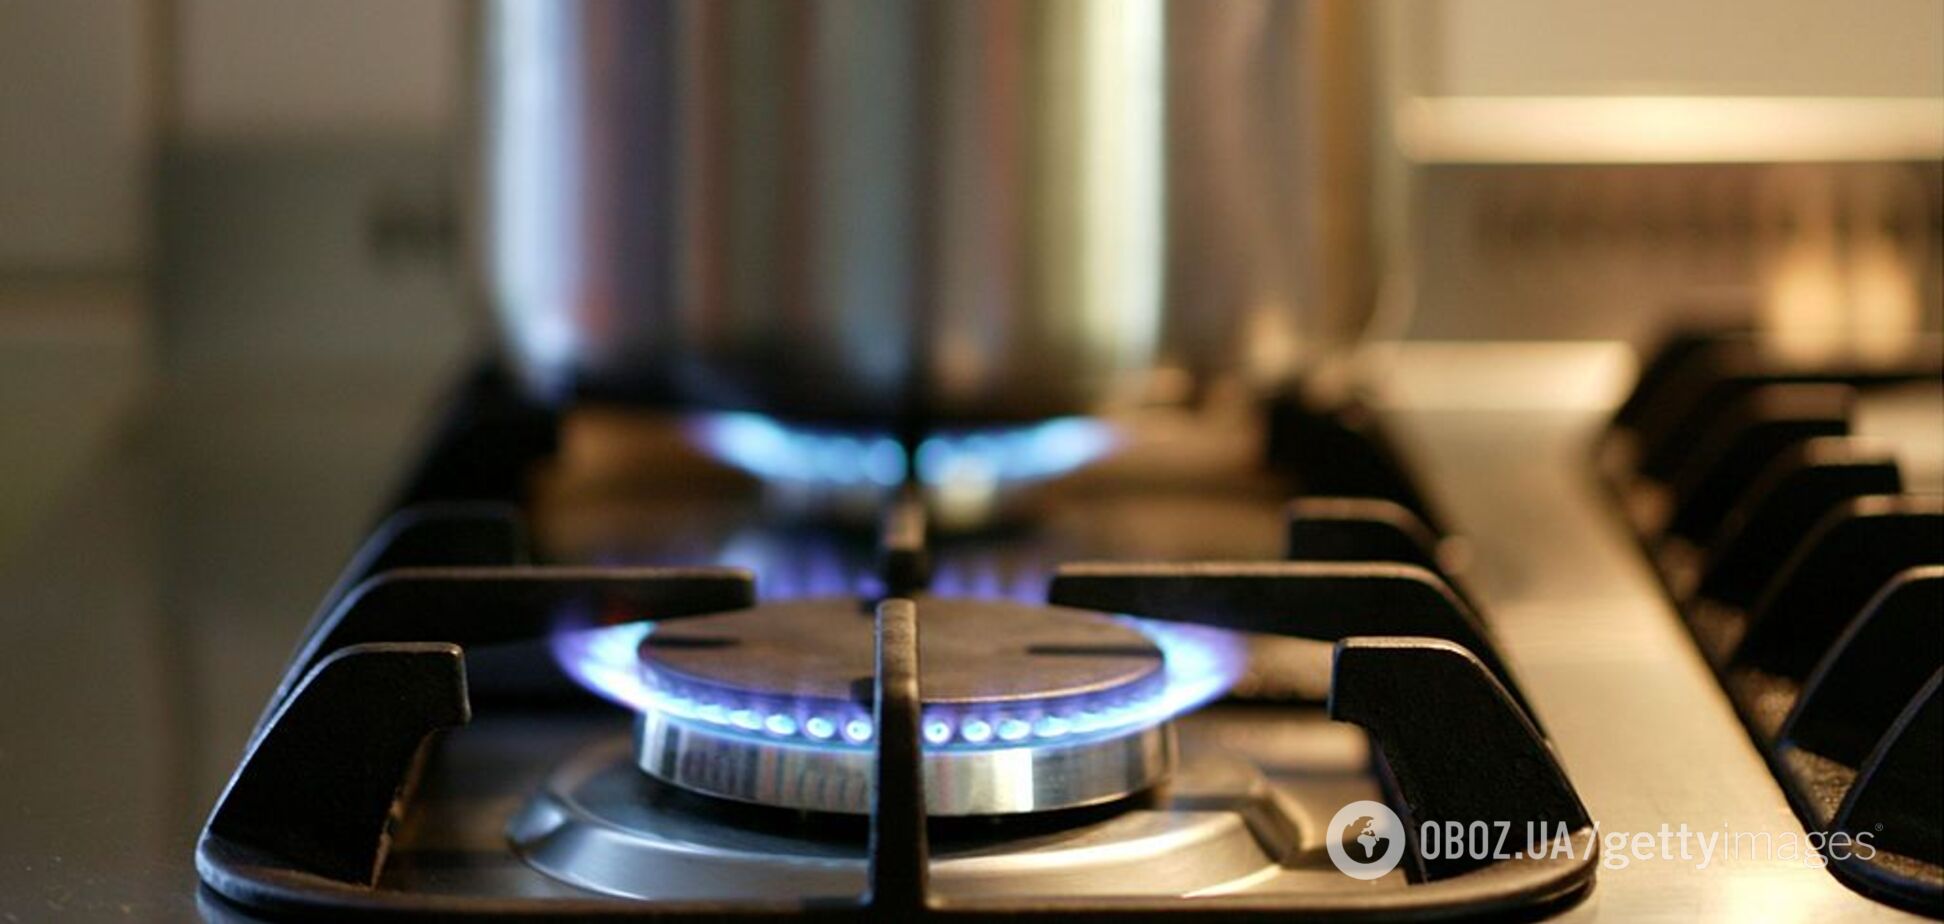 Цена на газ снова будет расти: названы причины и срок